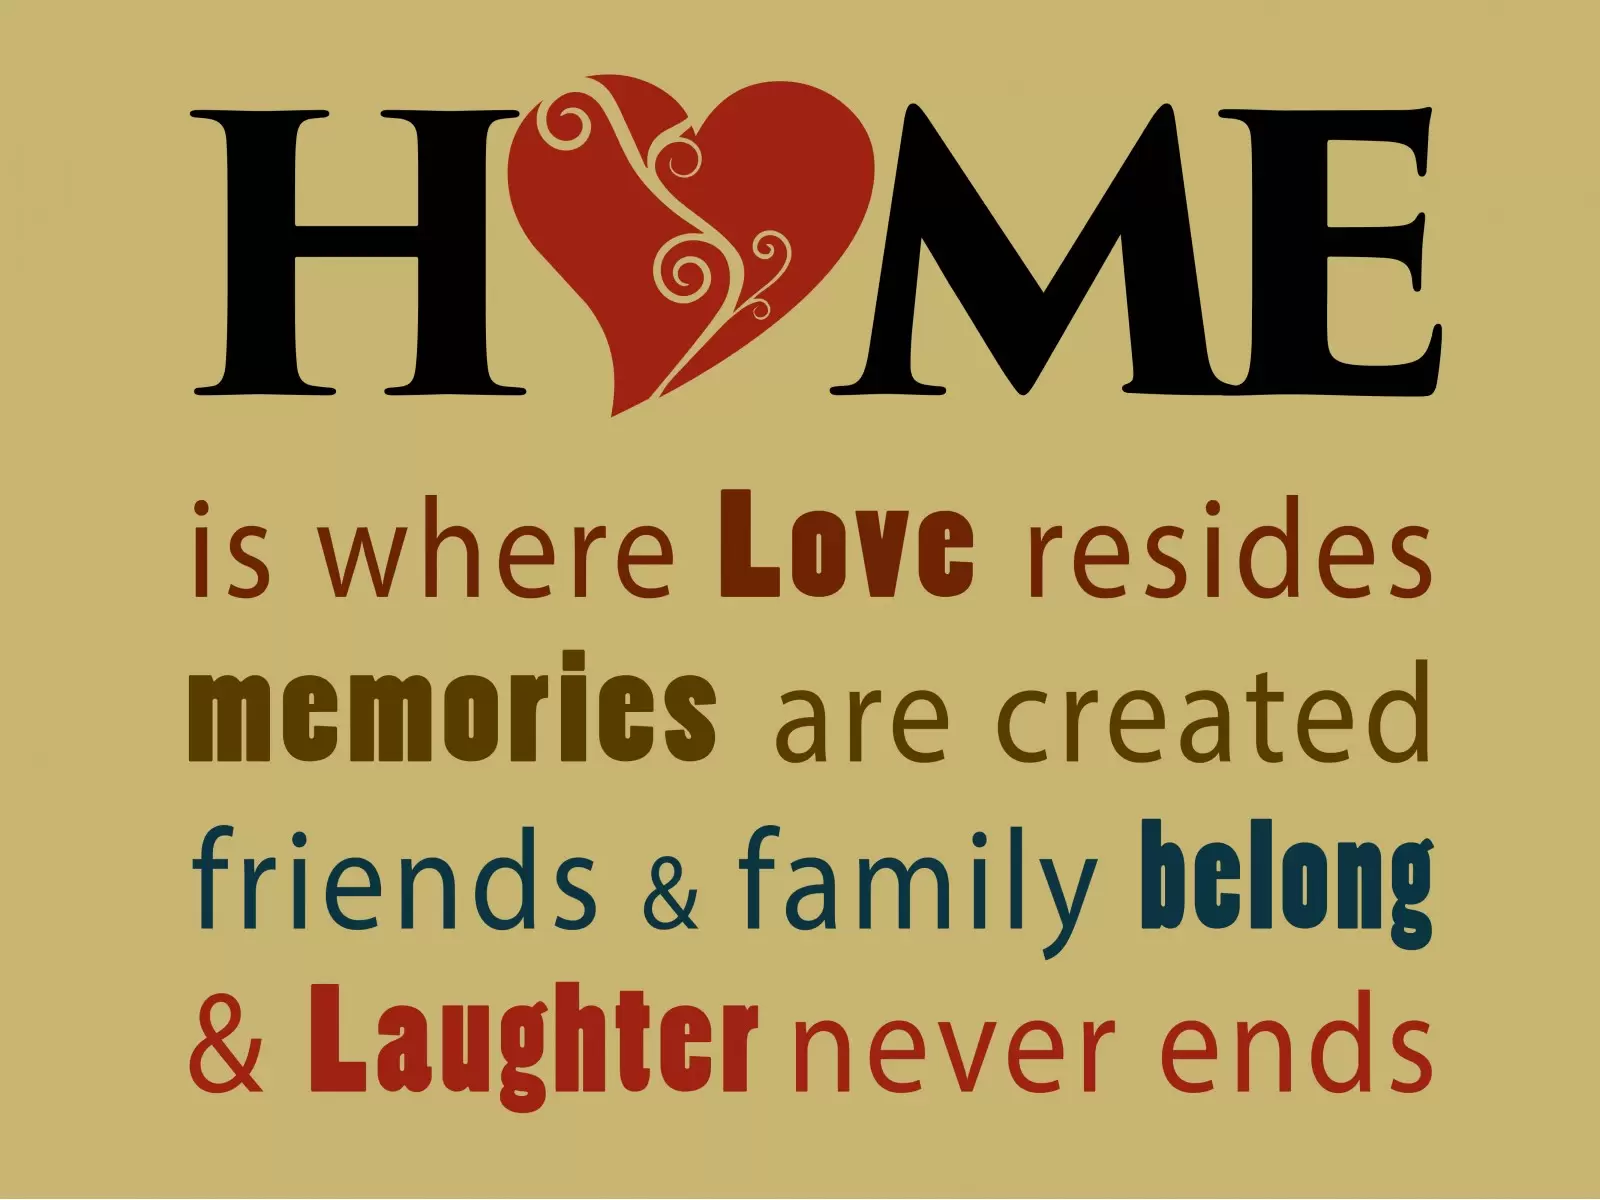 Home Where Love Resides - מסגרת עיצובים - מדבקות קיר משפטי השראה טיפוגרפיה דקורטיבית  - מק''ט: 240706